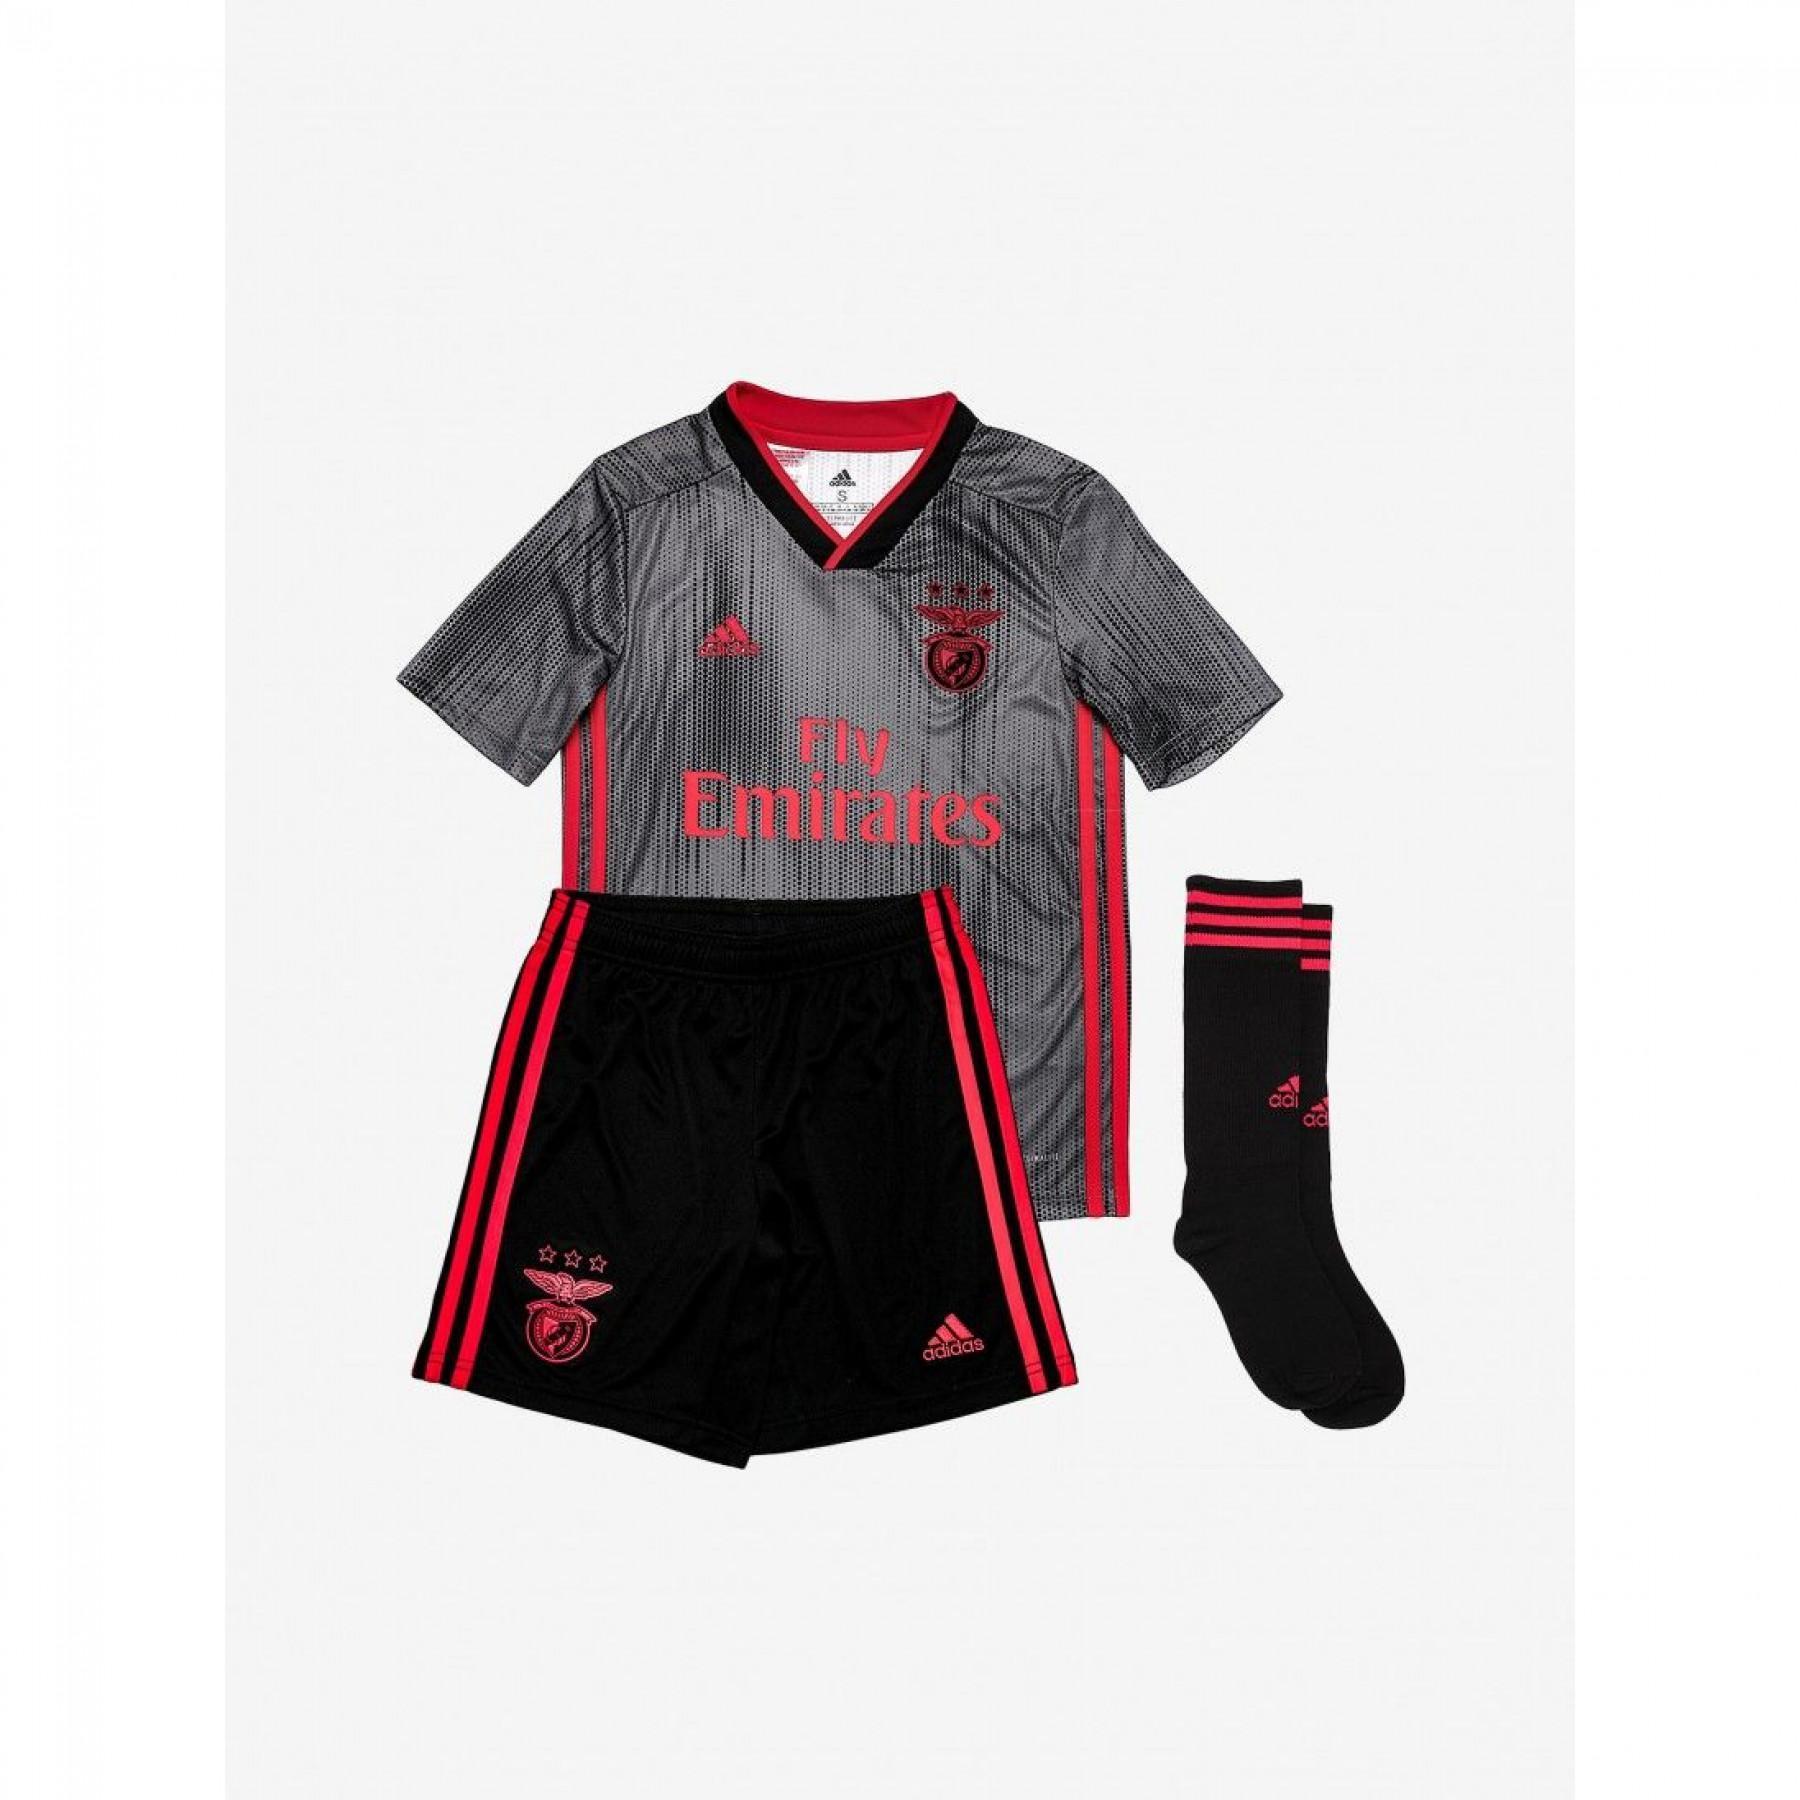 Mini-kit extérieur Benfica Lisbonne 2019/20